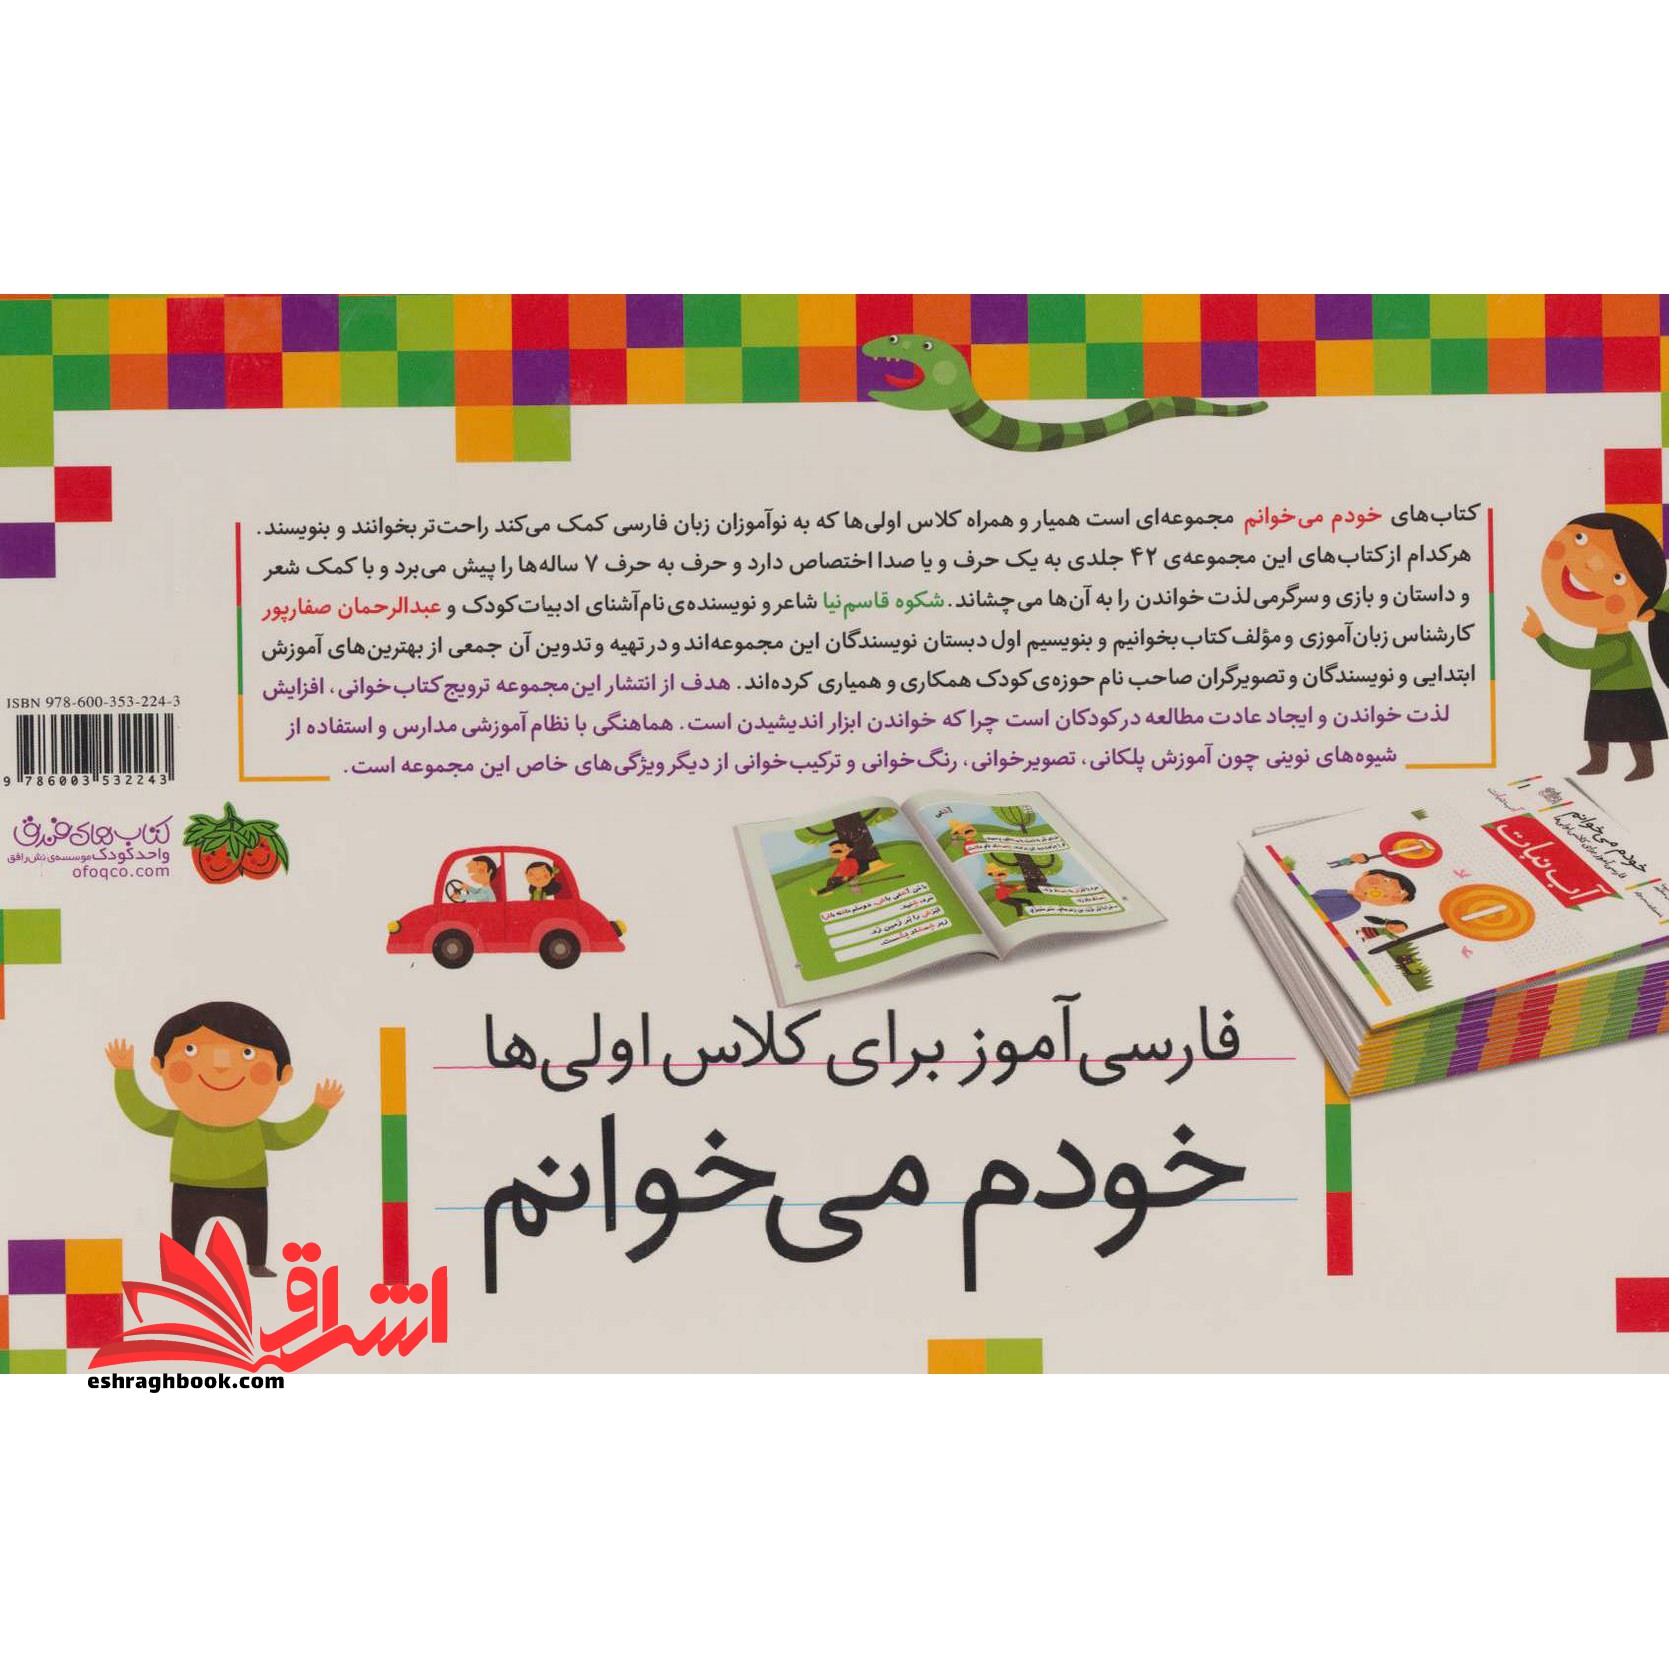 مجموعه 42 جلدی خودم میخوانم فارسی آموز برای کلاس اولی ها